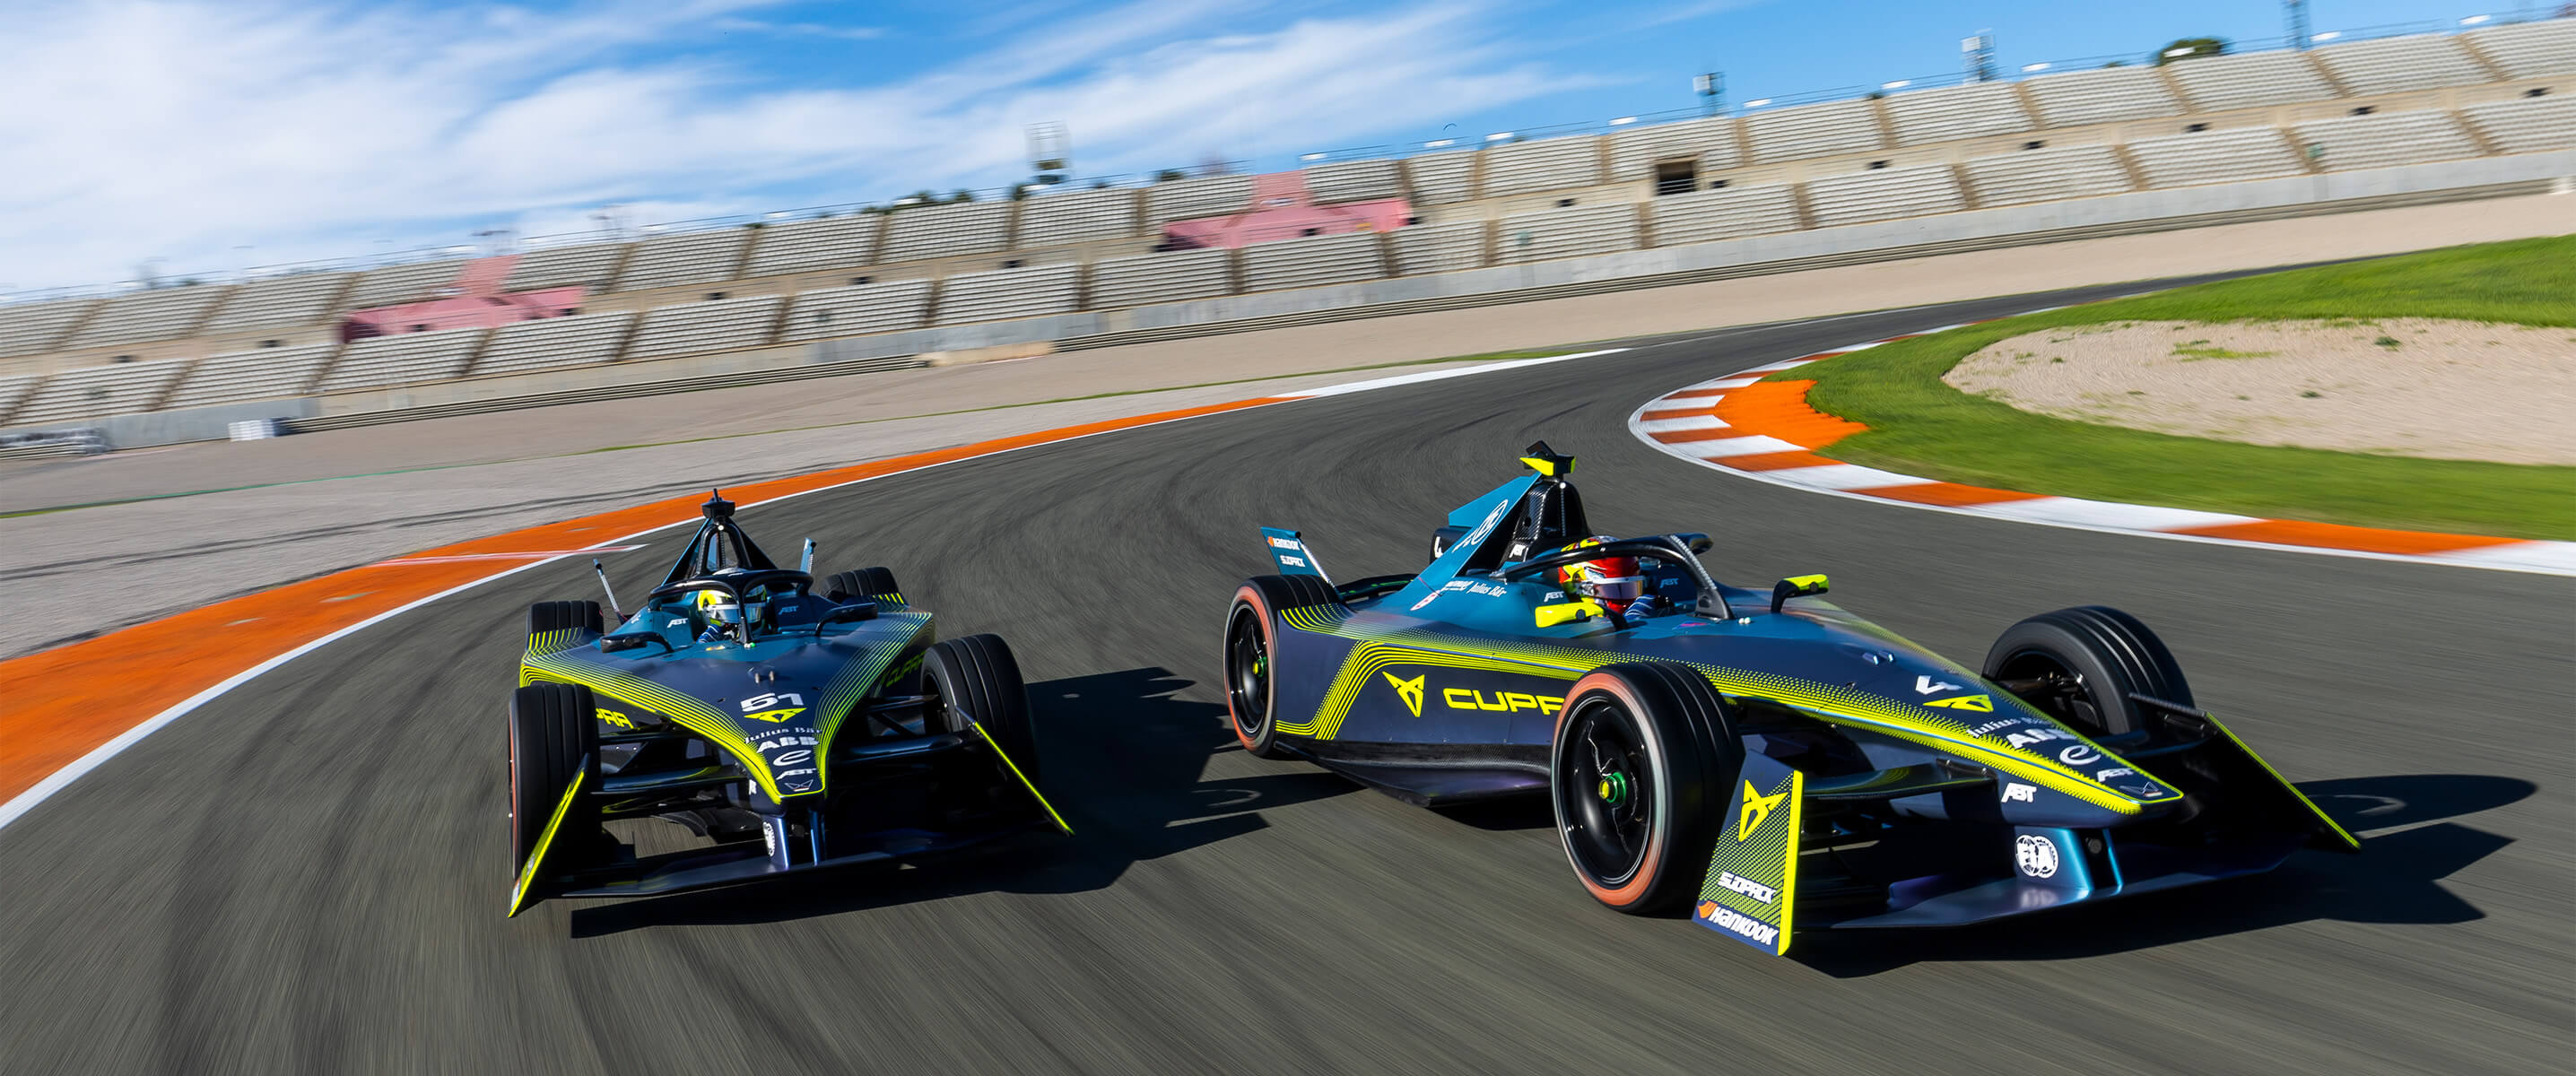 Two ABT CUPRA Formula Es on a racetrack